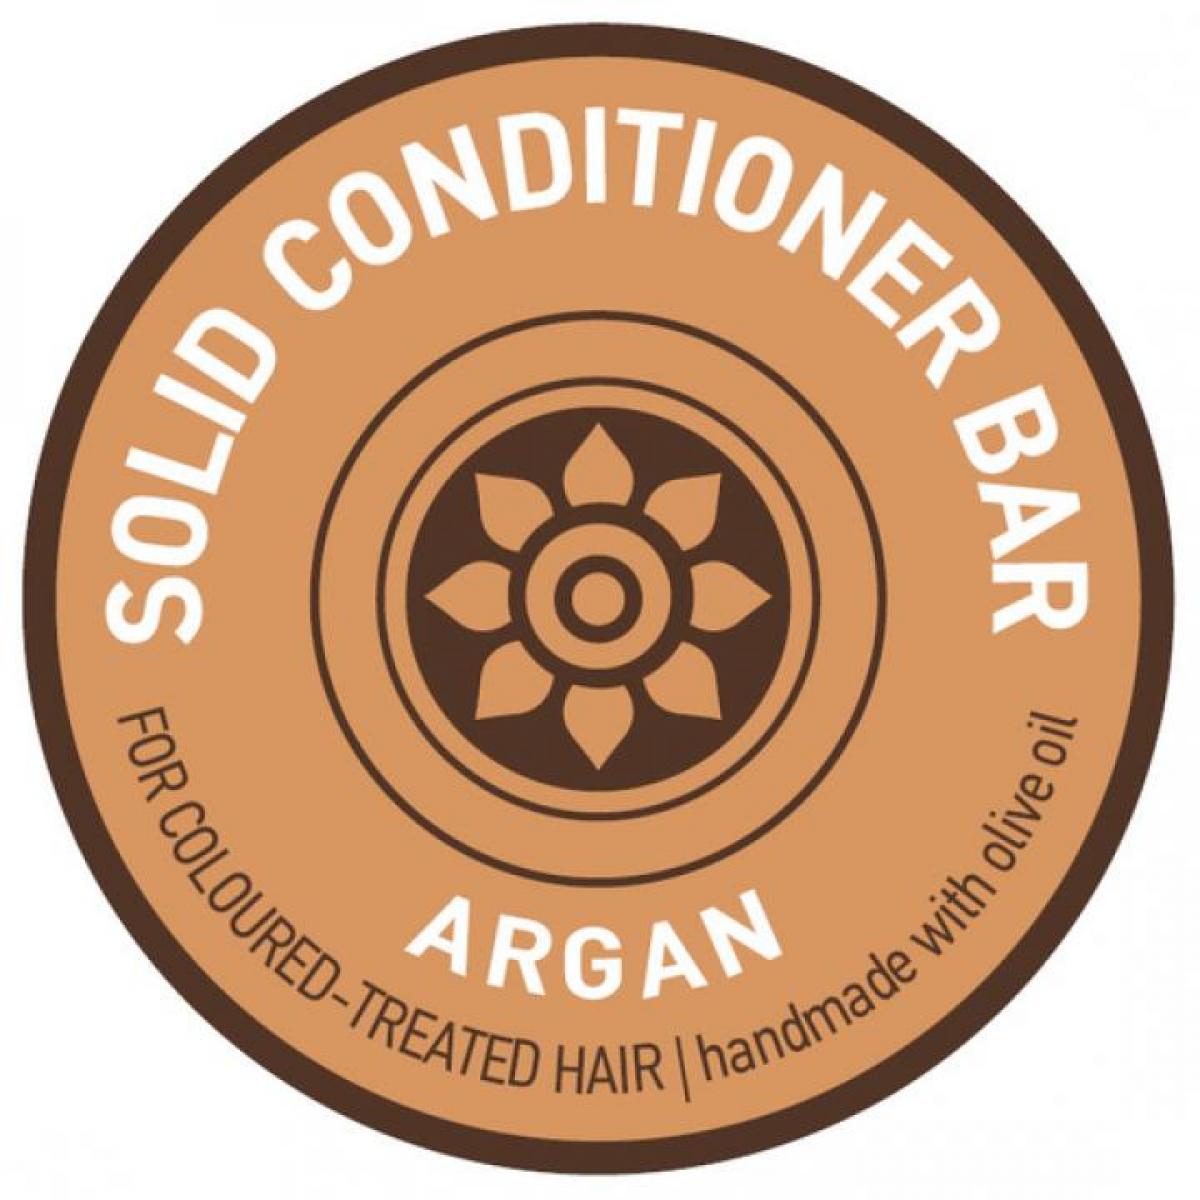 Solid Conditioner Bar Argan